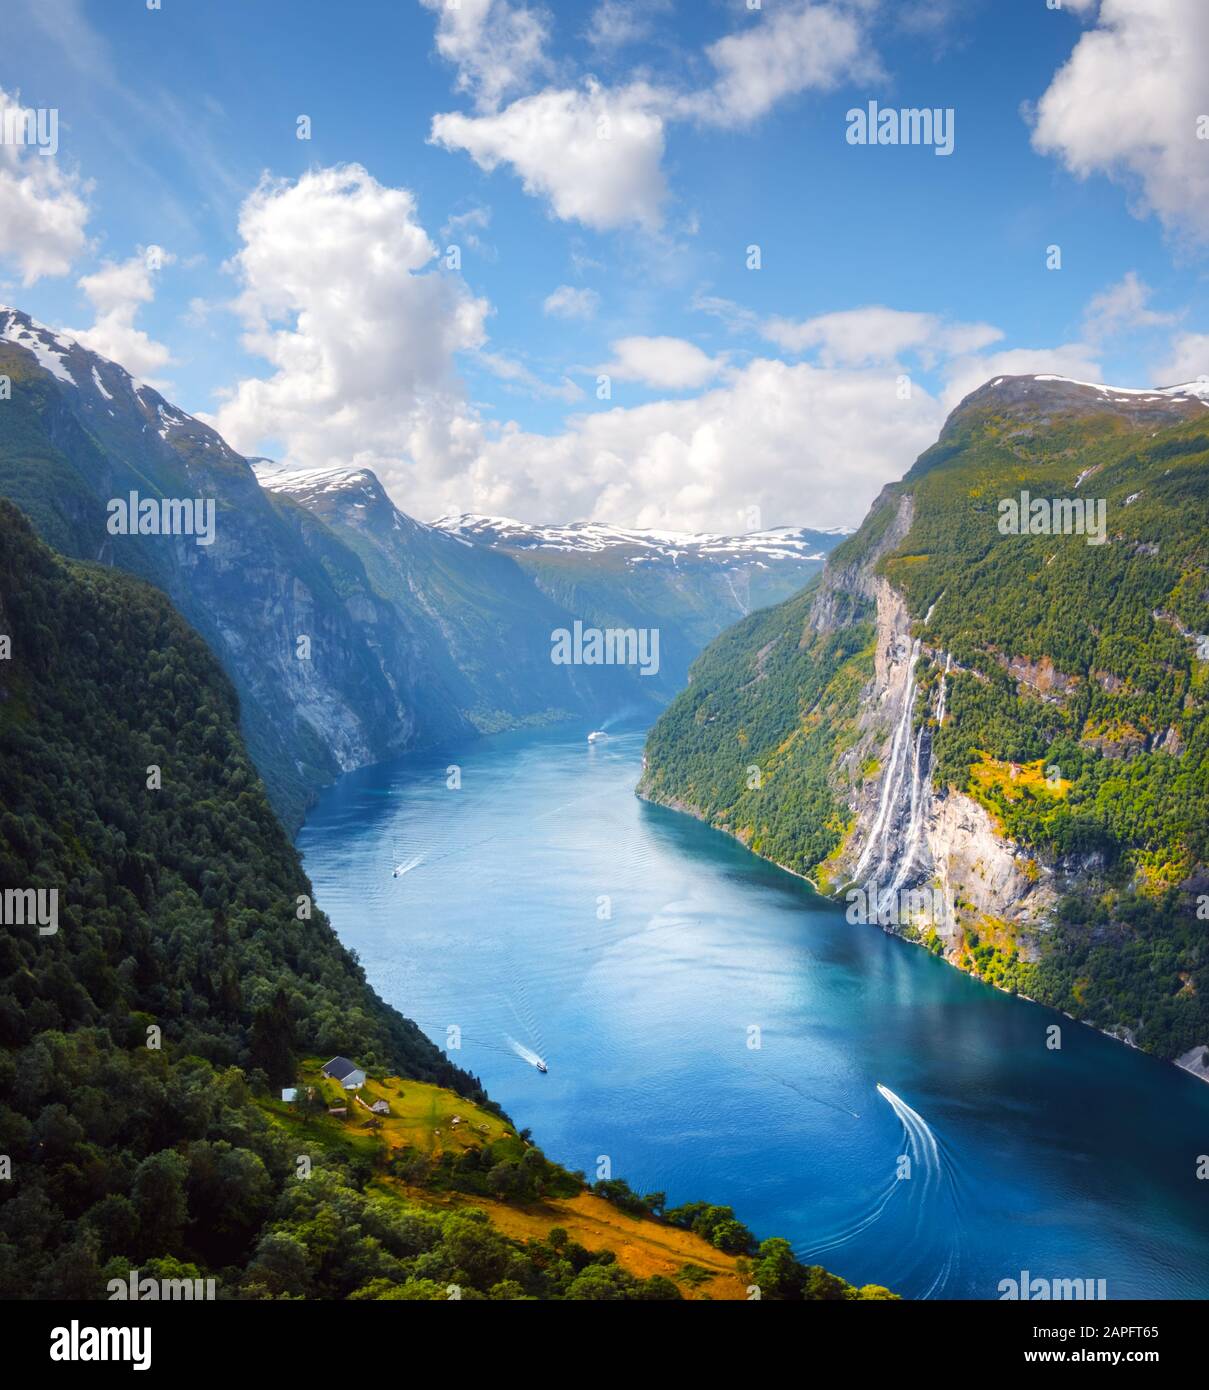 Vista mozzafiato del fiordo di Sunnylvsfjorden e delle famose cascate delle sette Sorelle, vicino al villaggio di Geiranger nella Norvegia occidentale. Fotografia di paesaggio Foto Stock